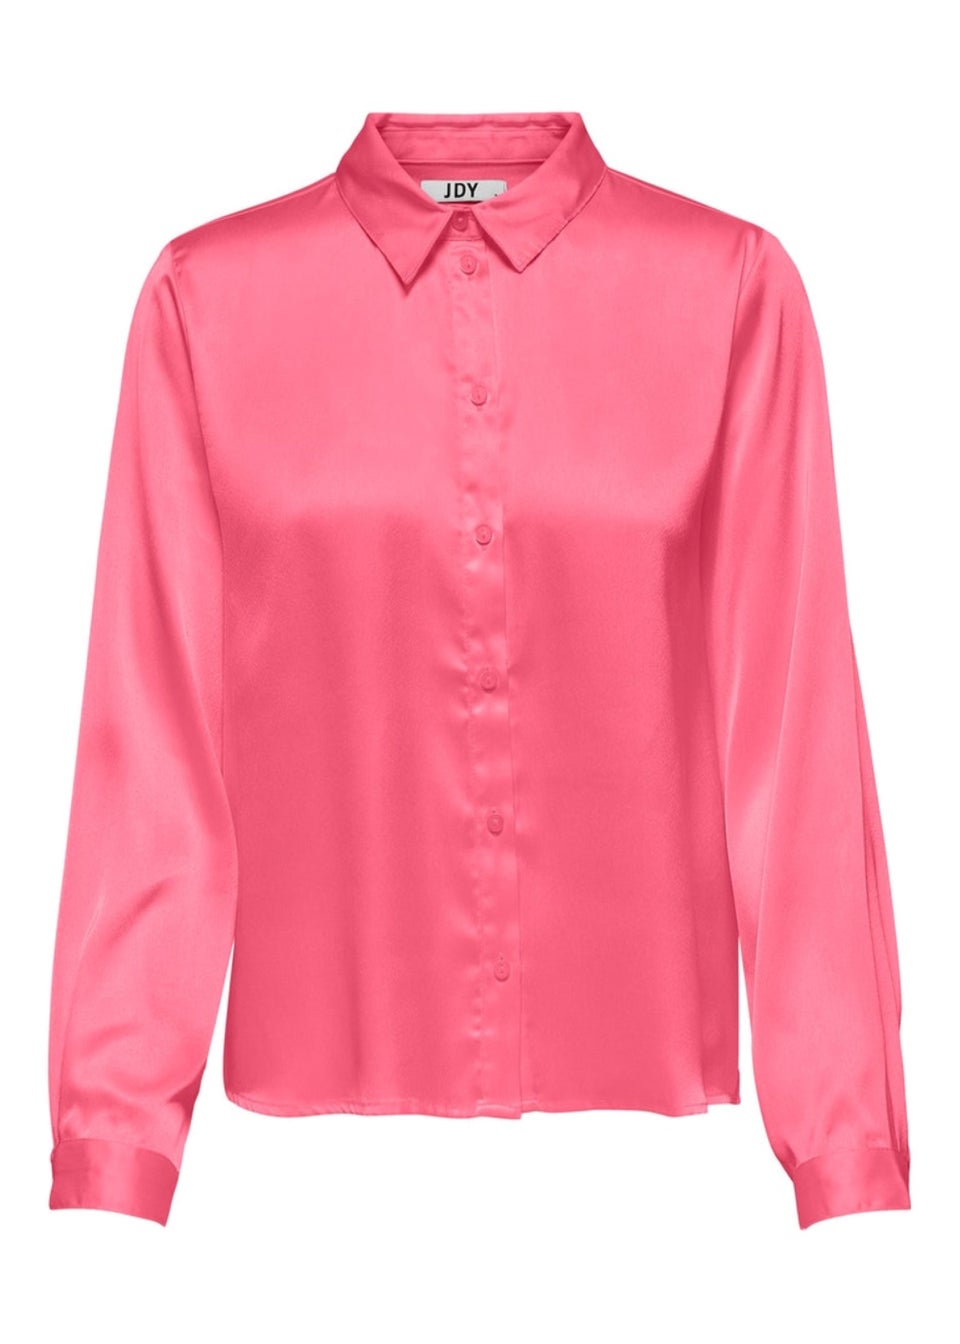 JDY Dyfifi Pink Shirt - Matalan